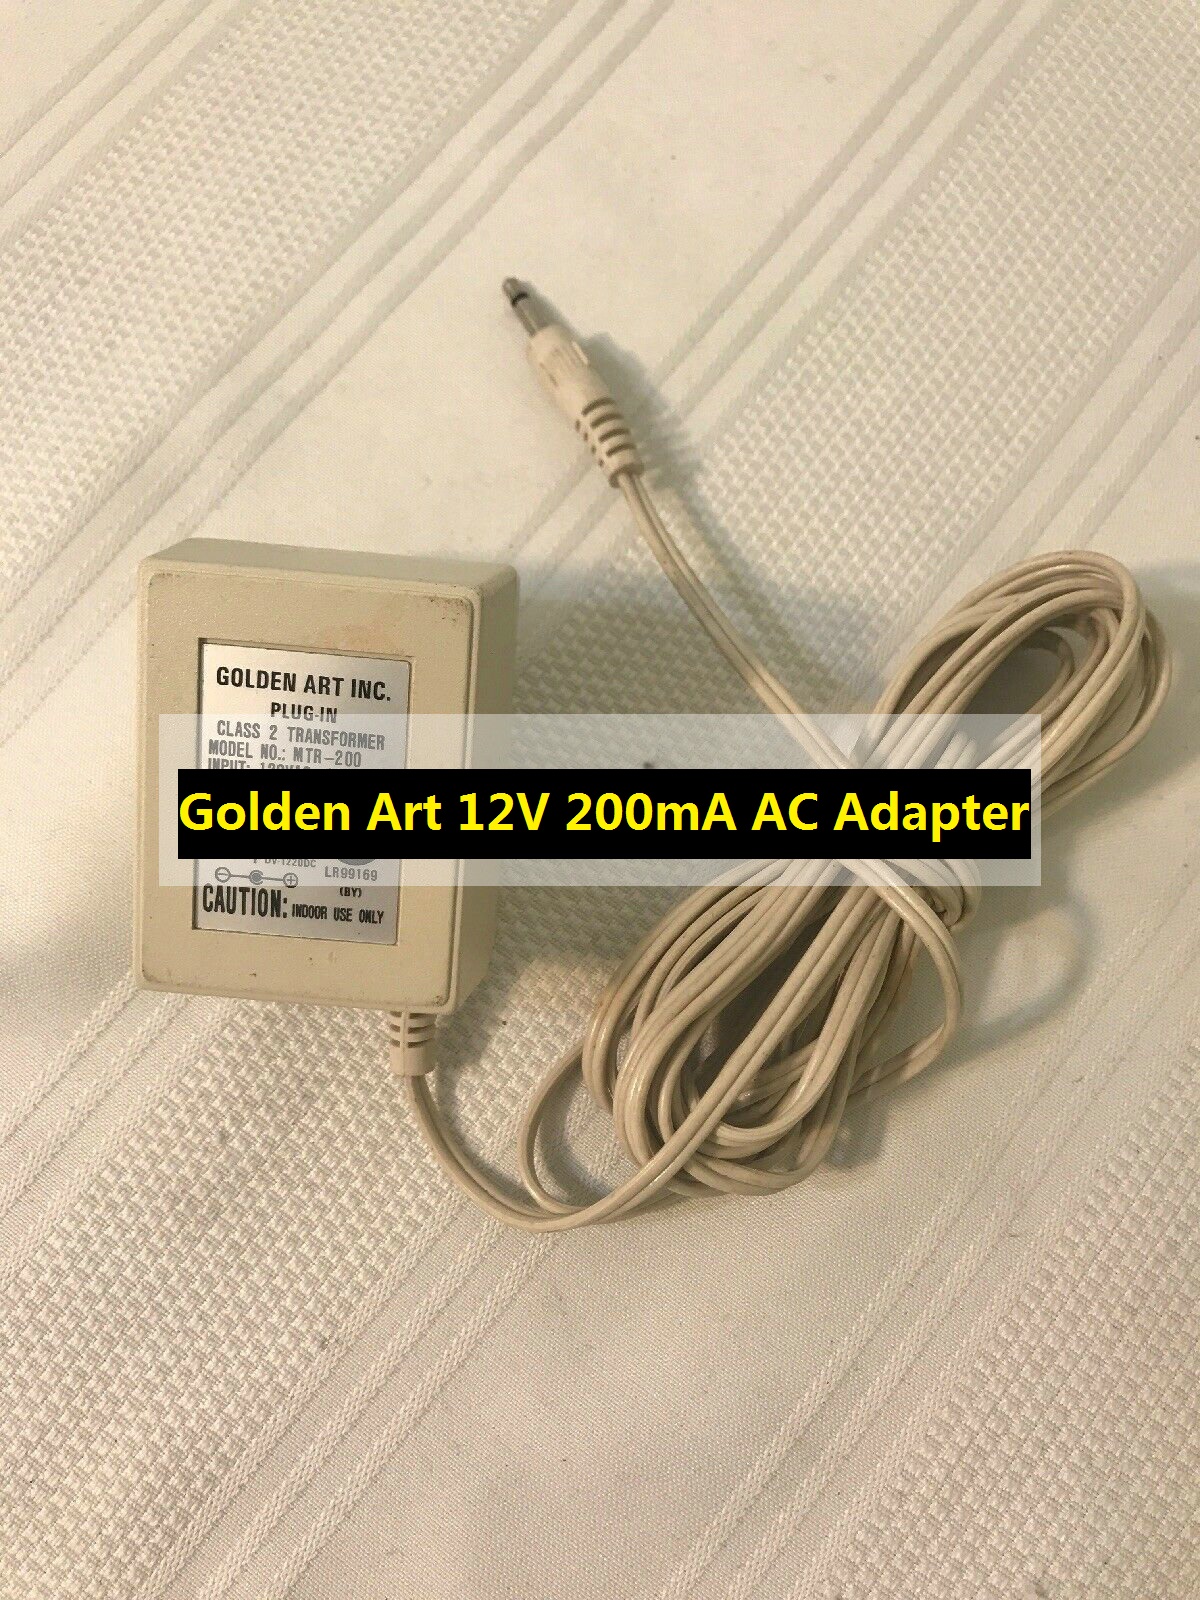 *Brand NEW*Golden Art AC Adapter MTR-200 Class 2 Transformer Power Supply Output: 12V 200mA